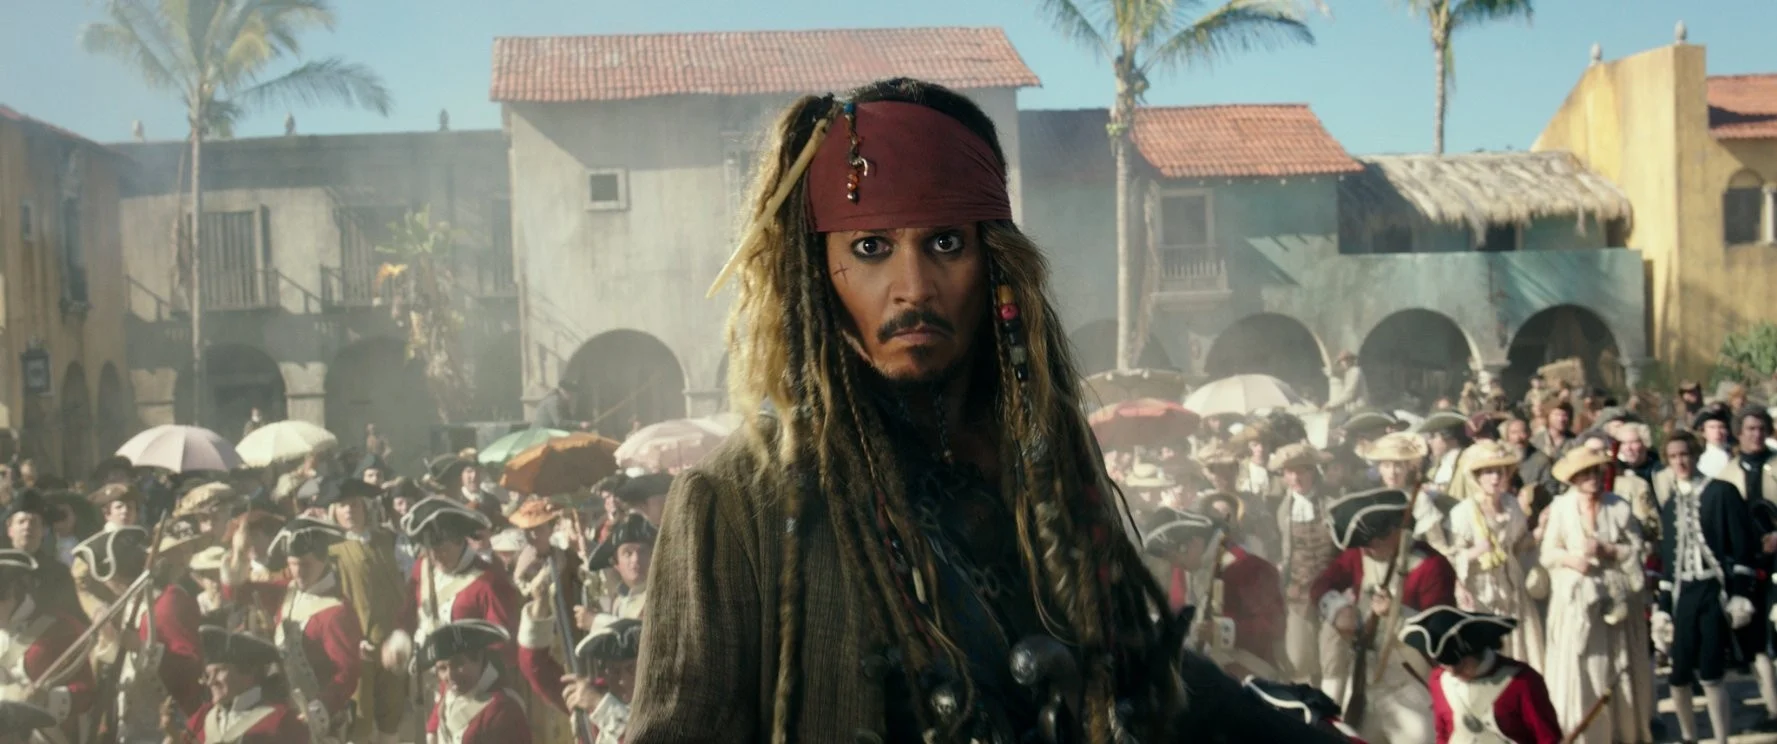 Обзор фильма «Пираты Карибского моря: Мертвецы не рассказывают сказки». Воробей, бей их! - изображение обложка